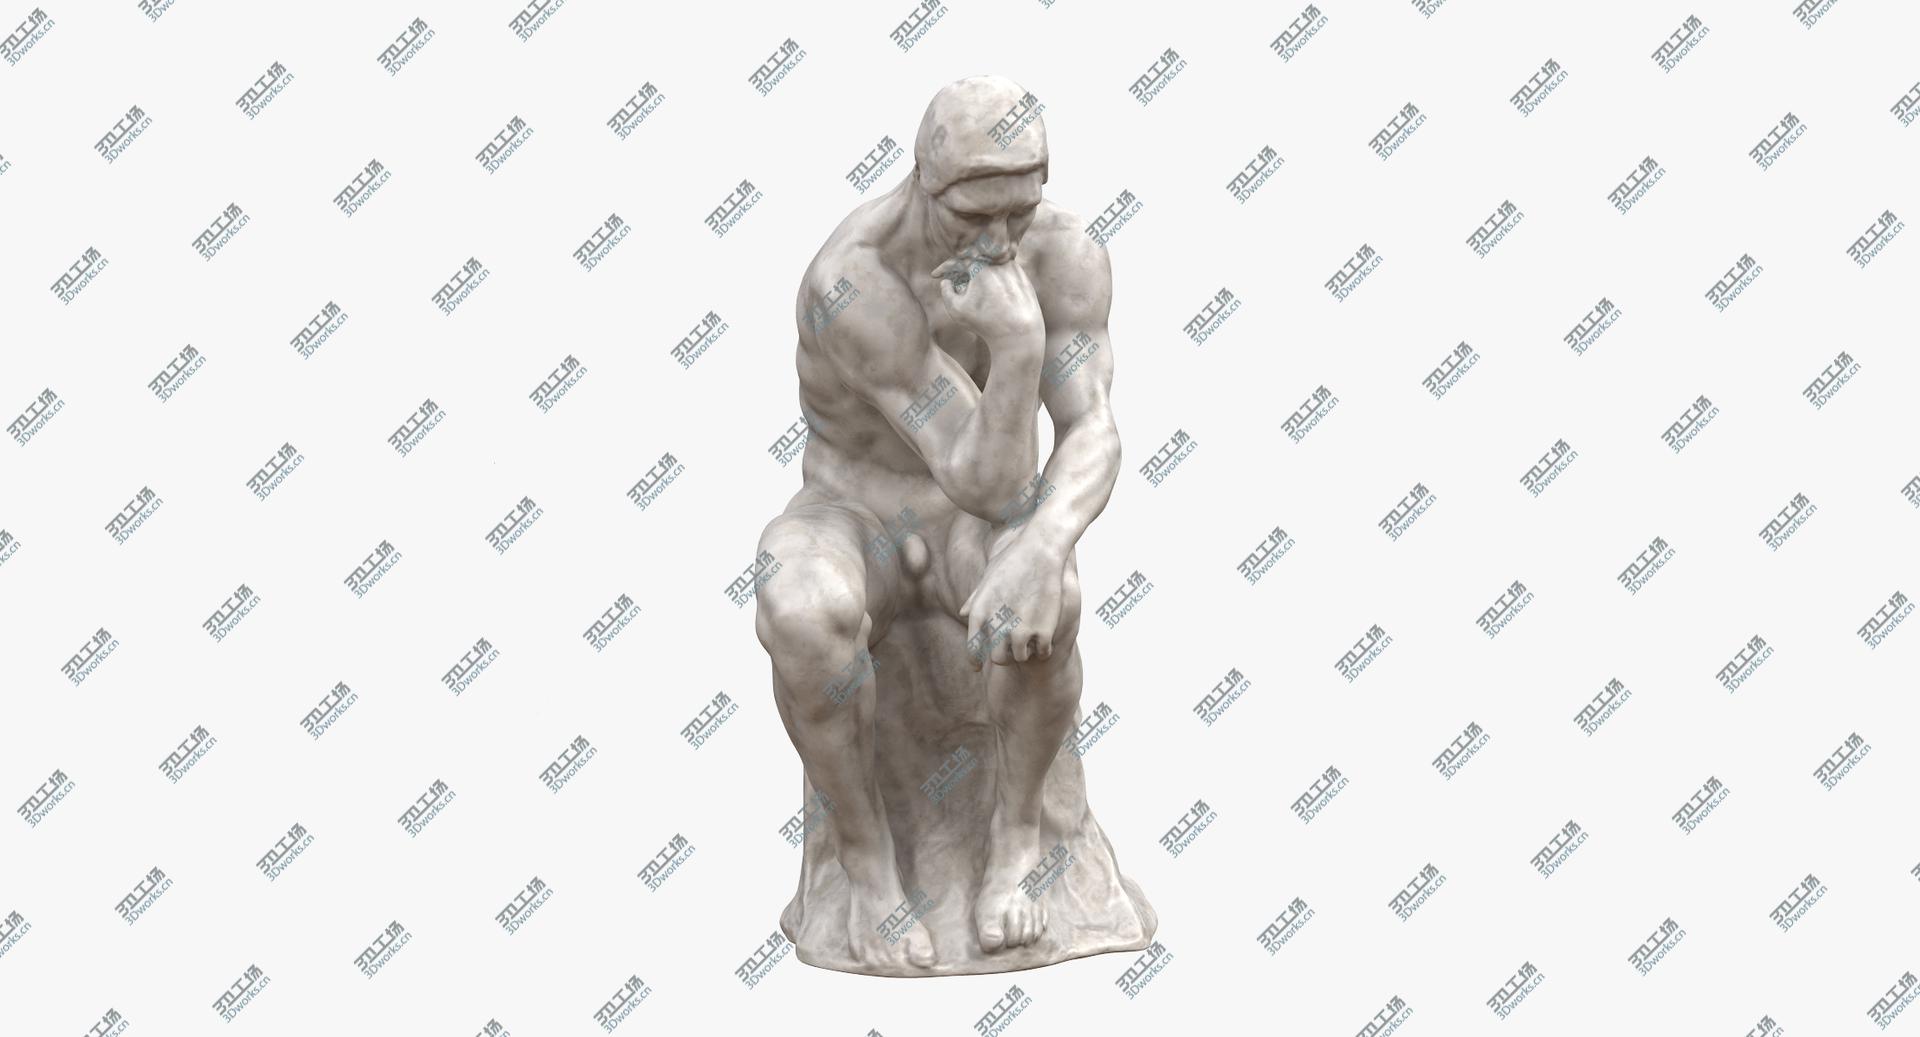 images/goods_img/2021040233/The Thinker Marble 3D model/3.jpg